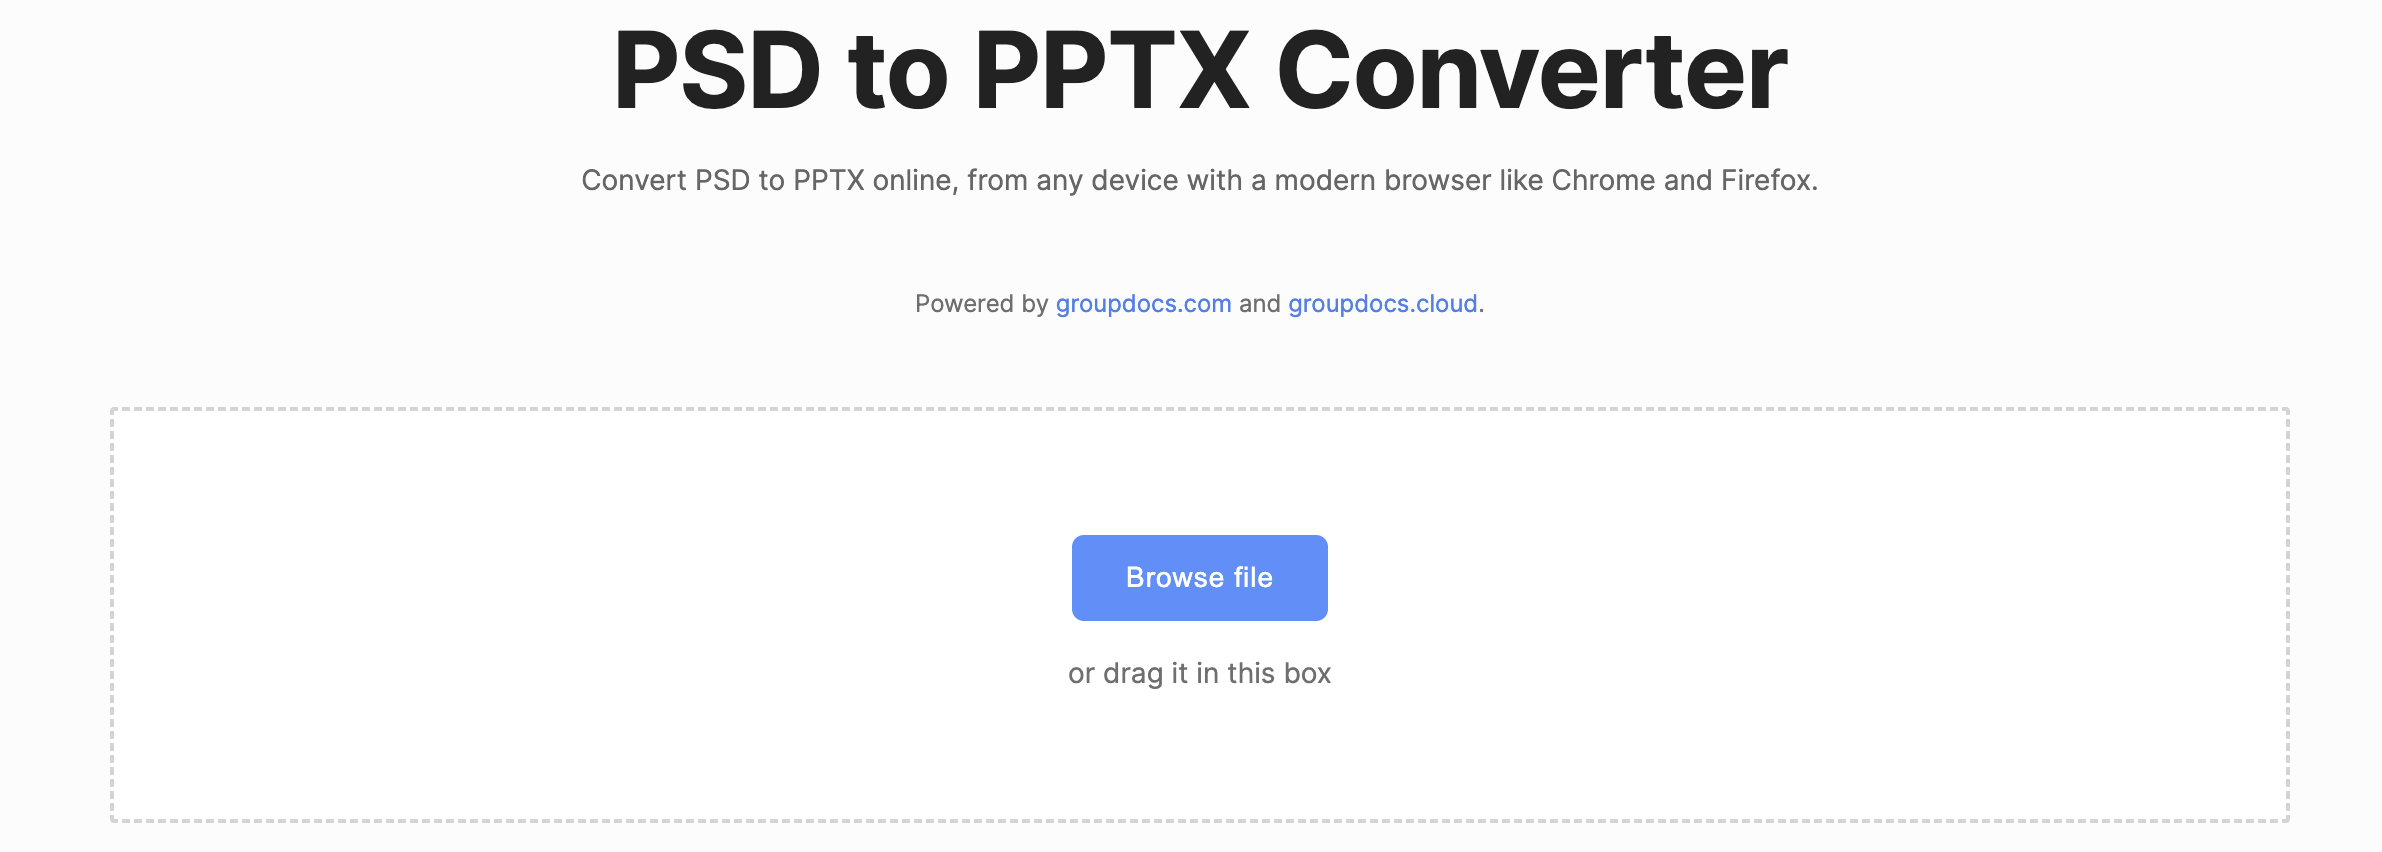 تحويل psd إلى pptx عبر الإنترنت